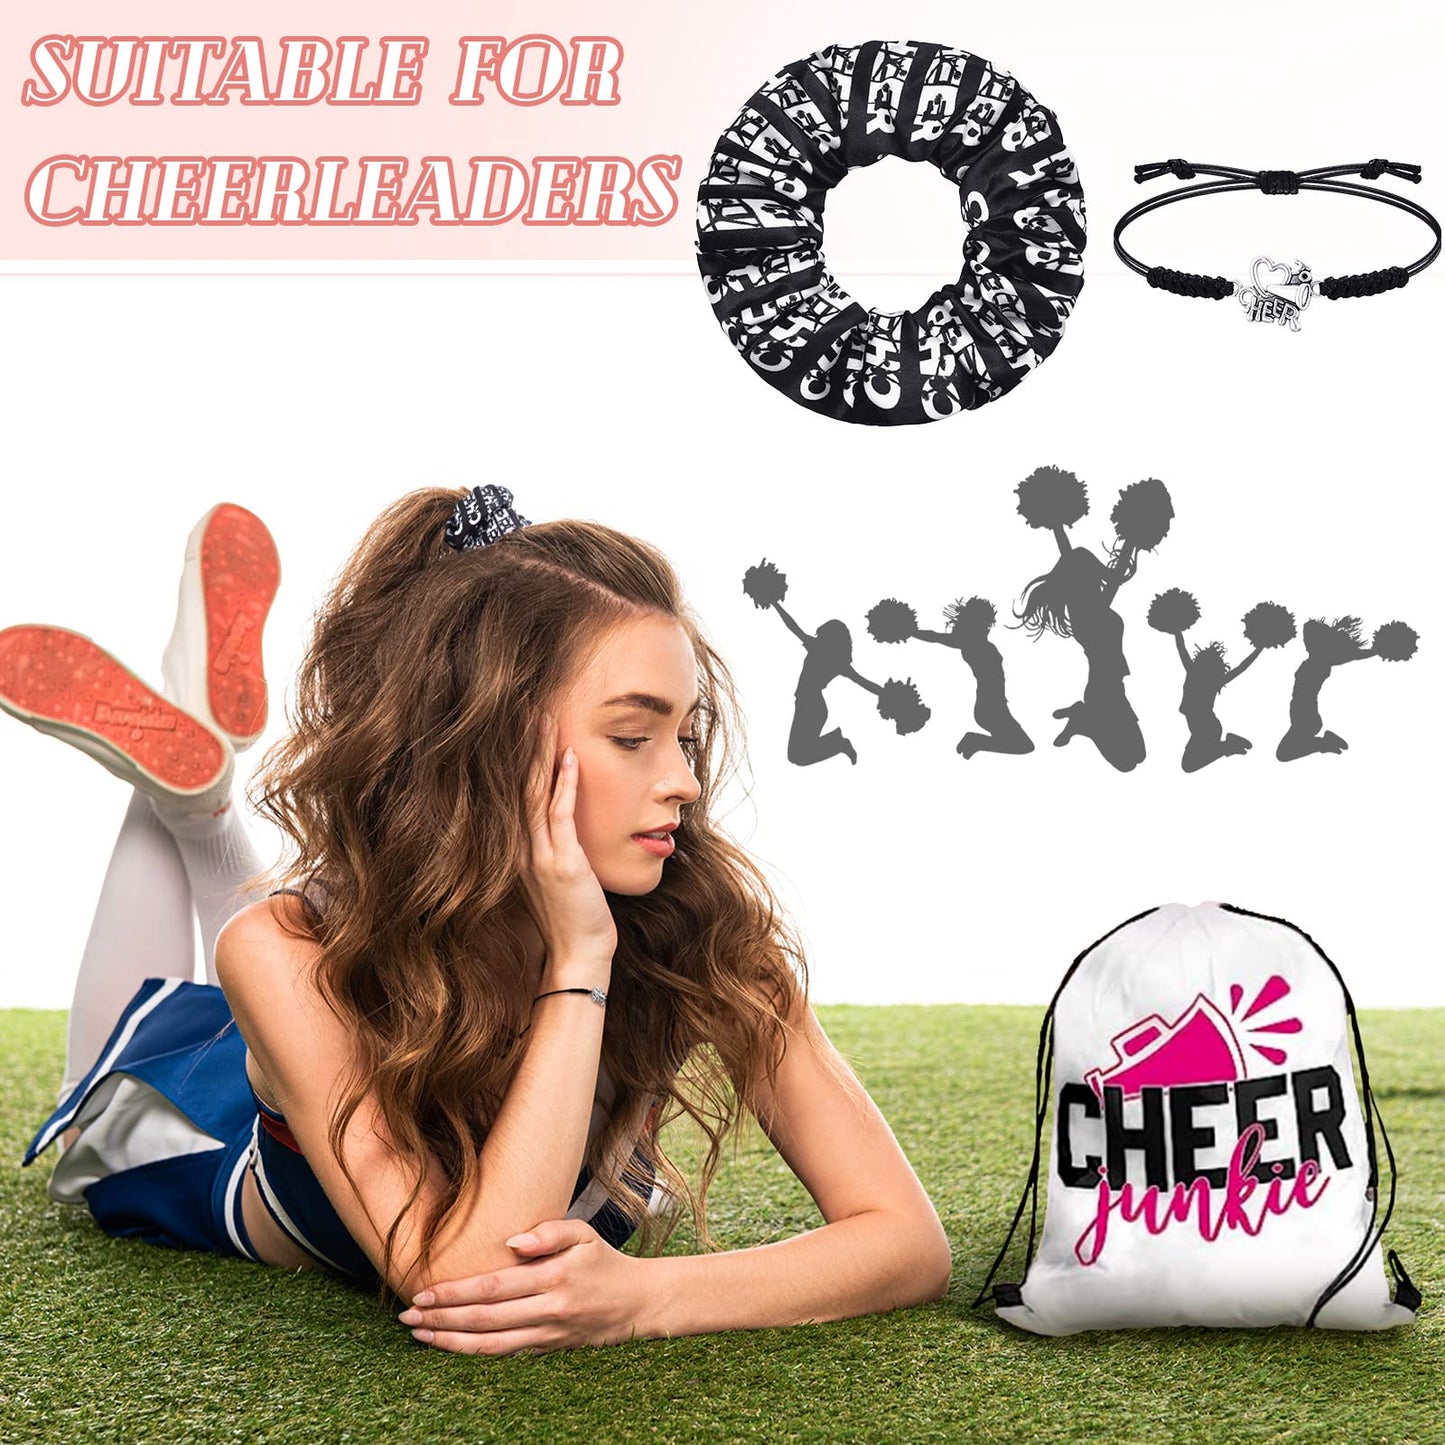 Hanaive 20 Pcs Cheerleader Bracelet Cheer Sport Hair Scrunchies Cheerleader Gifts Charm Hair Ties Adjustable Cheerleader Gifts for Cheer Team Cheerleading Birthday Party (Black)